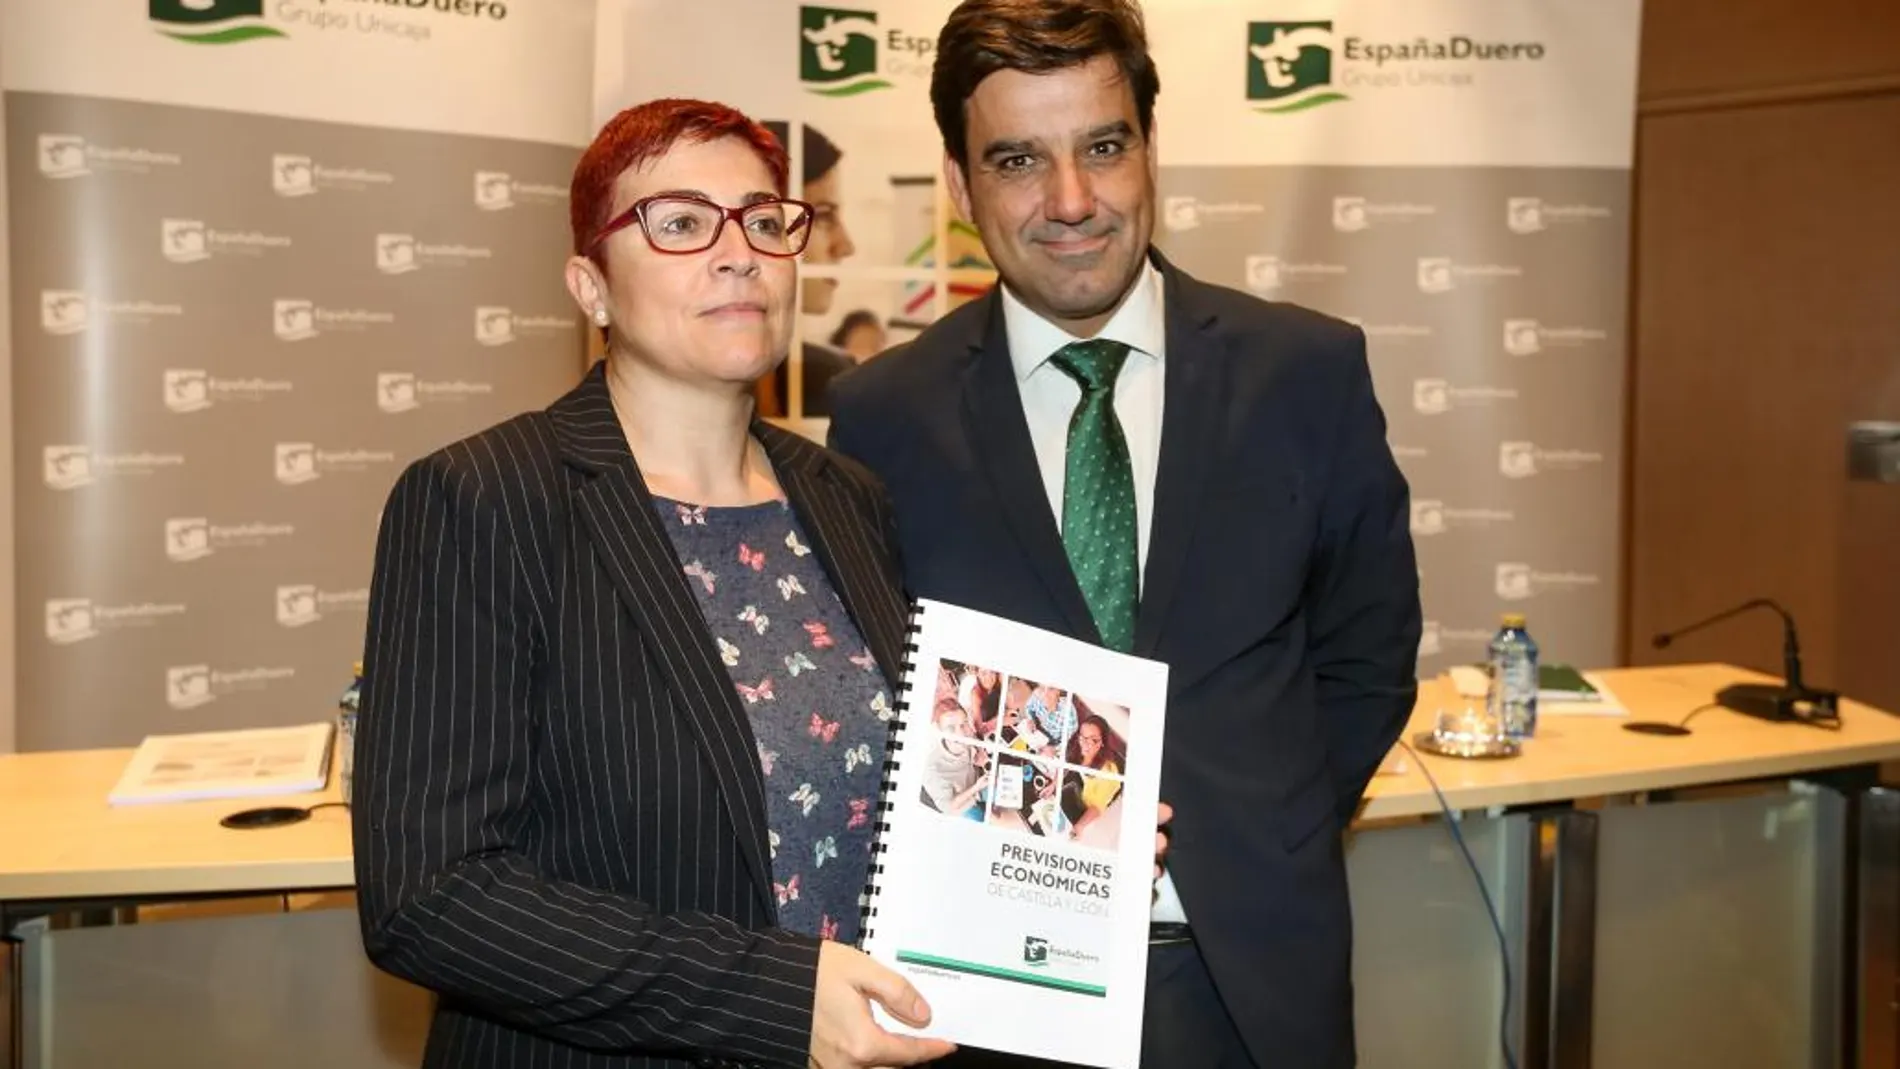 Felisa Becerra y Manuel Rubio presentan el informe económico de EspañaDuero